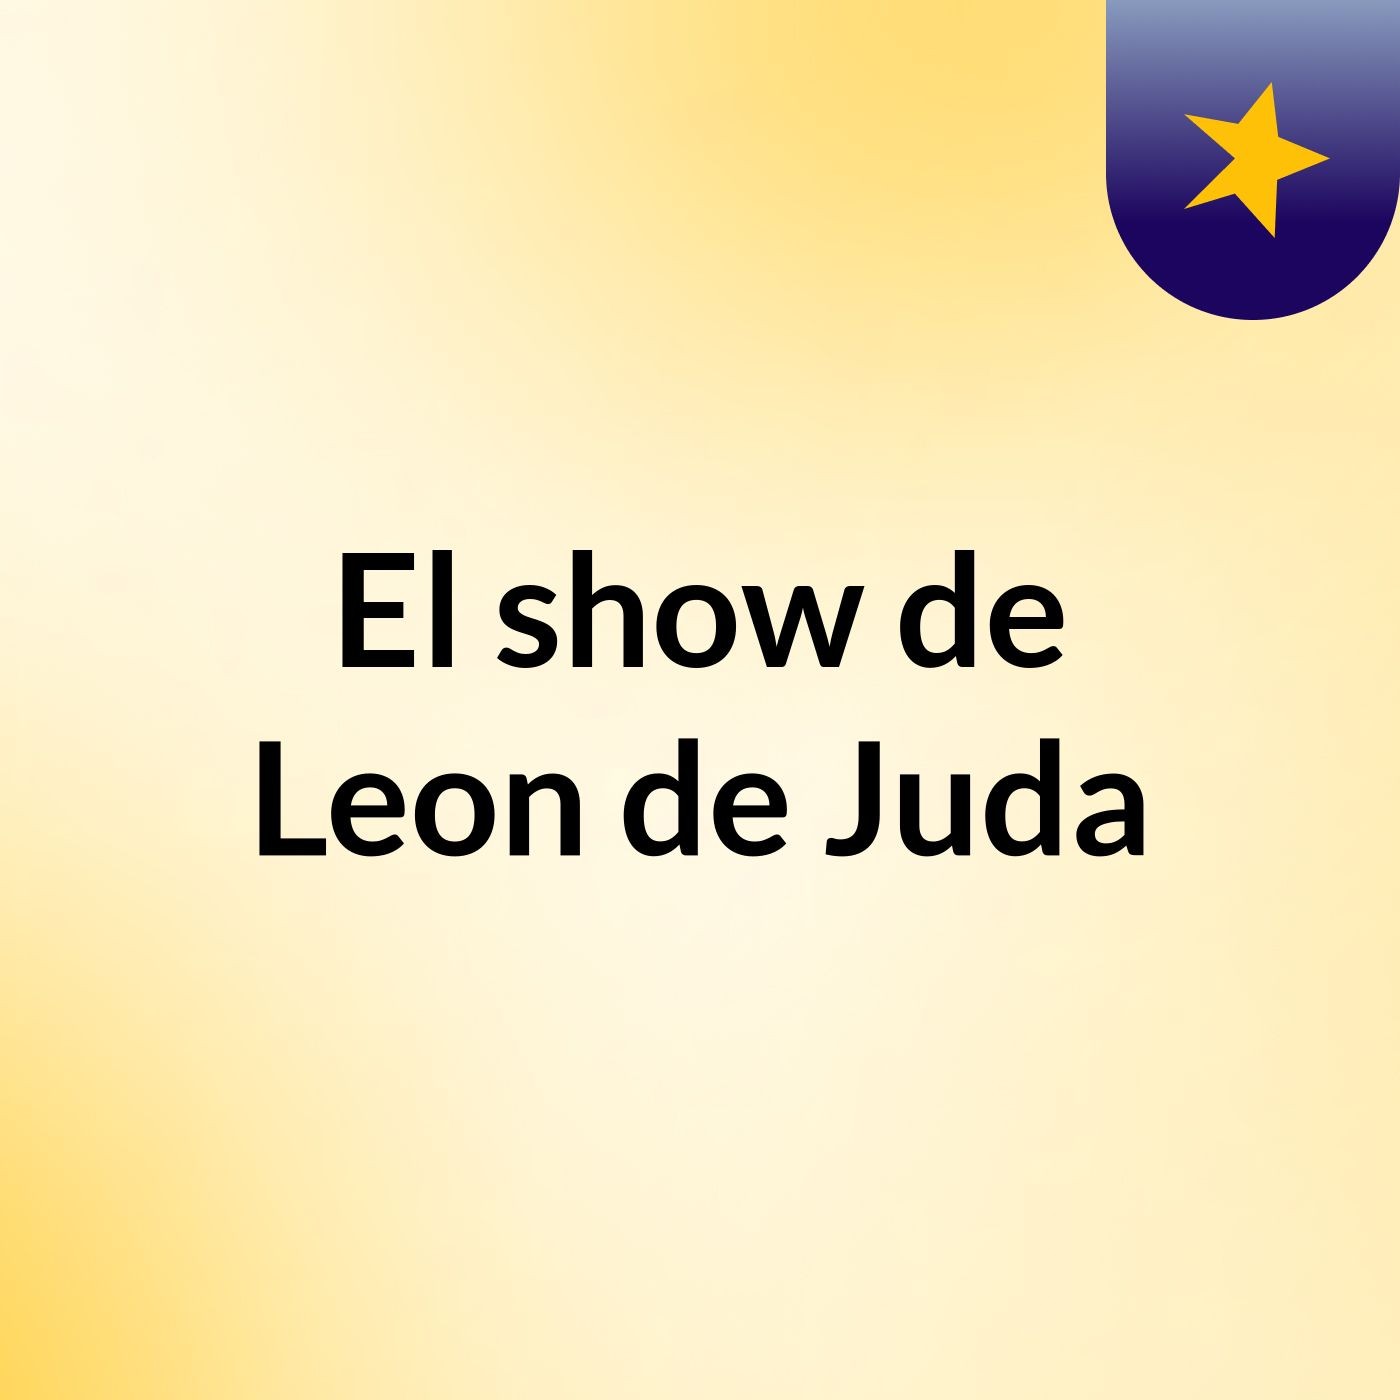 El show de Leon de Juda